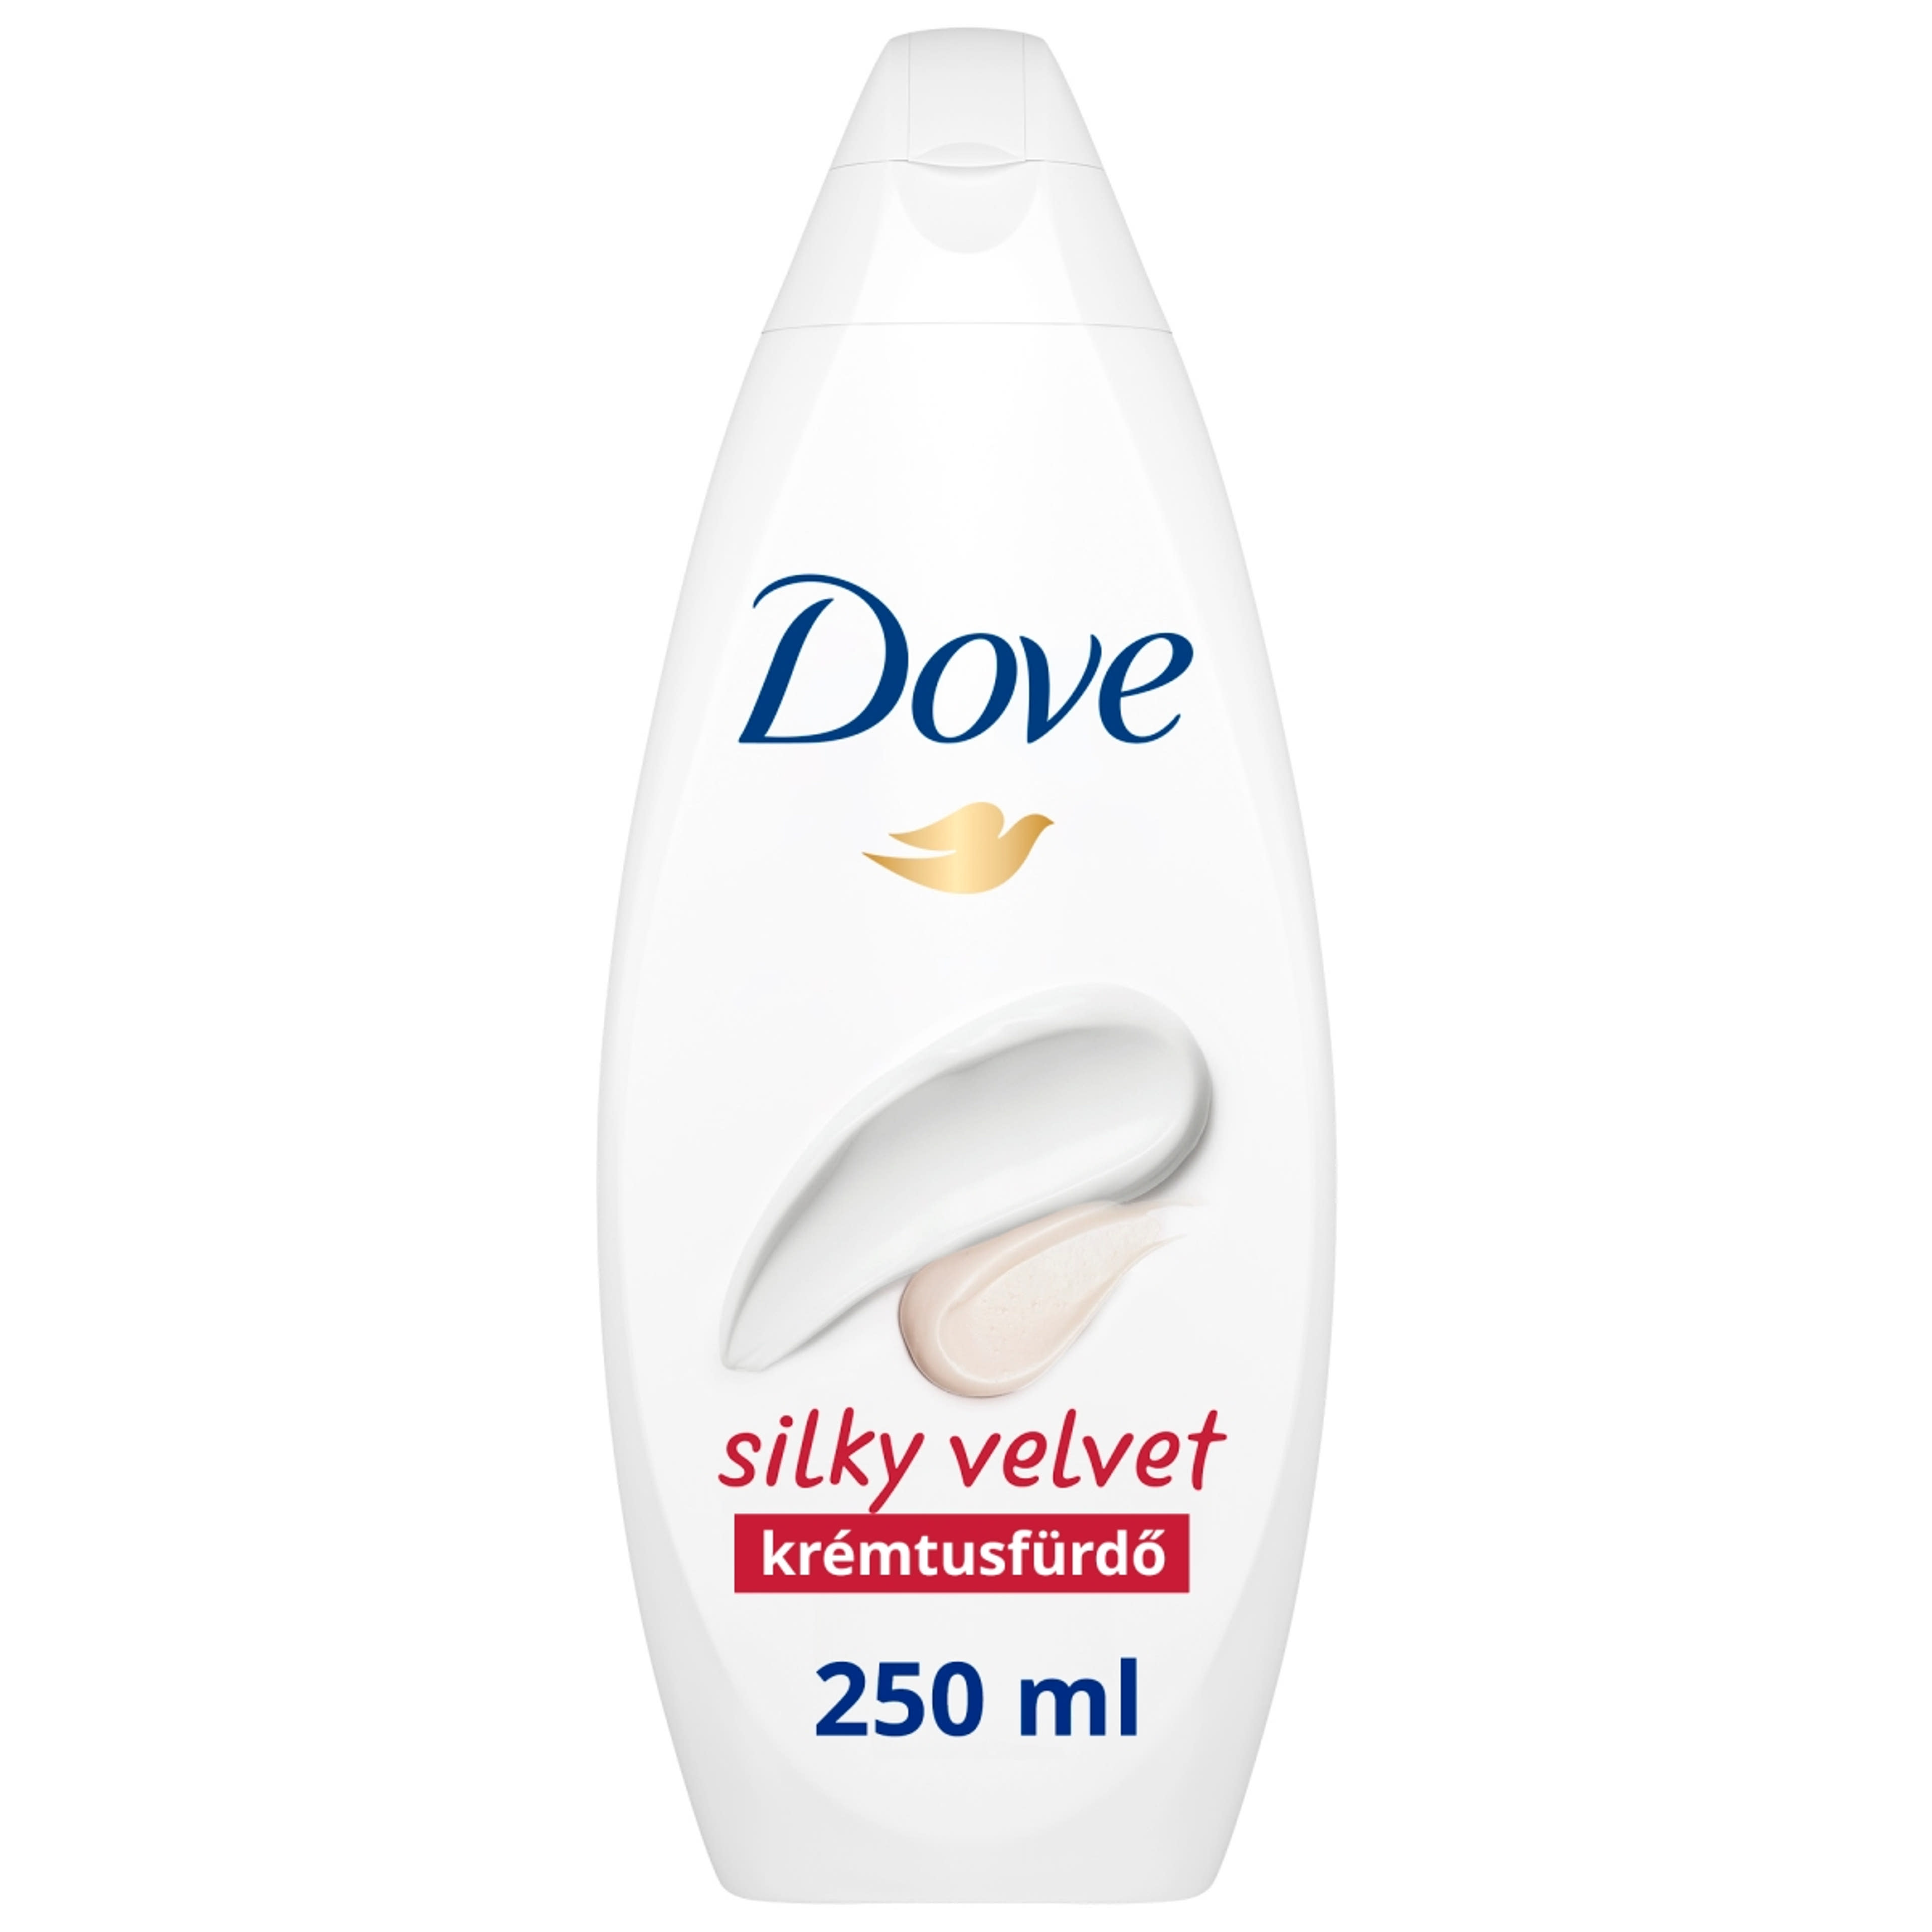 Dove Silky Velvet krémtusfürdő - 250 ml-2